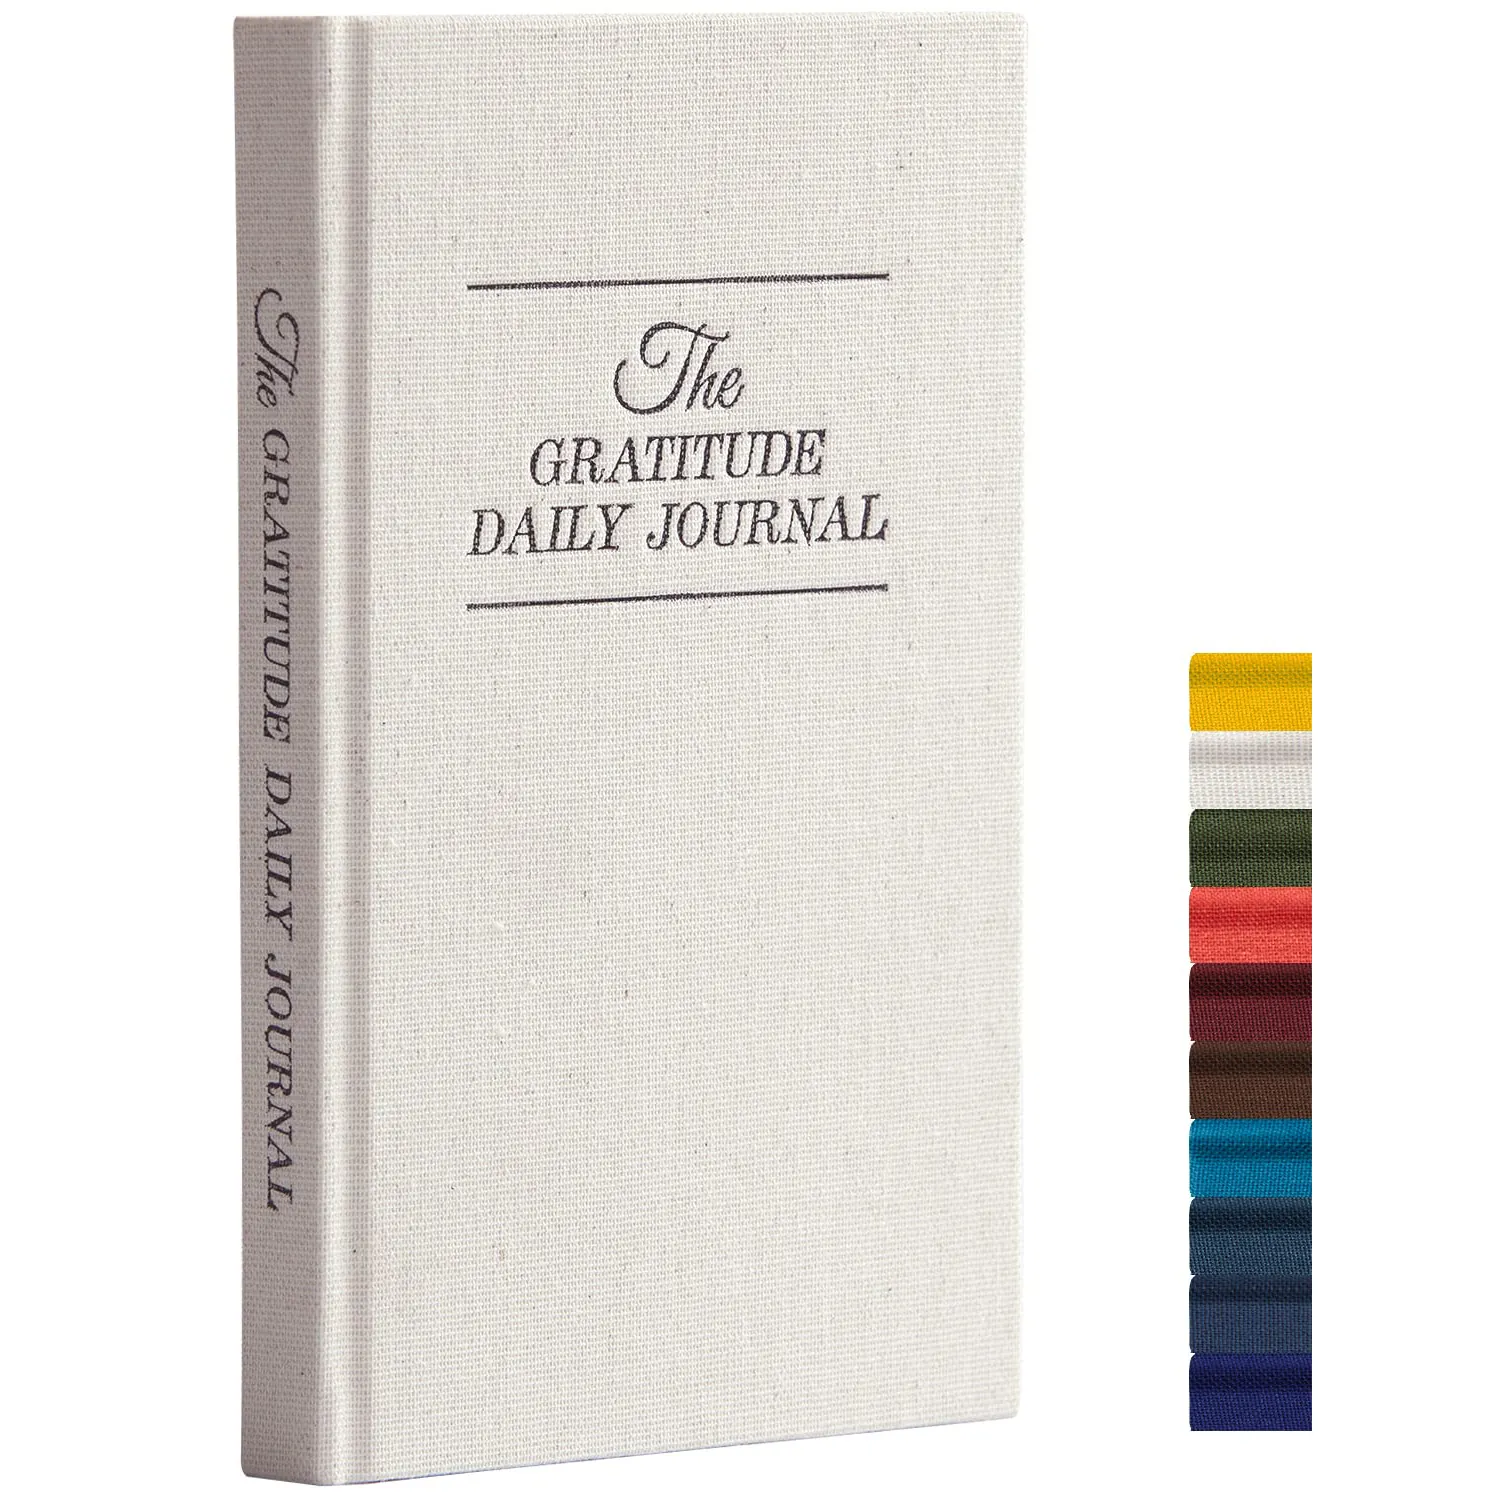 Bajo MOQ Impresión personalizada Tapa dura de lino A5 Cuaderno Retro The Gratitude Journal